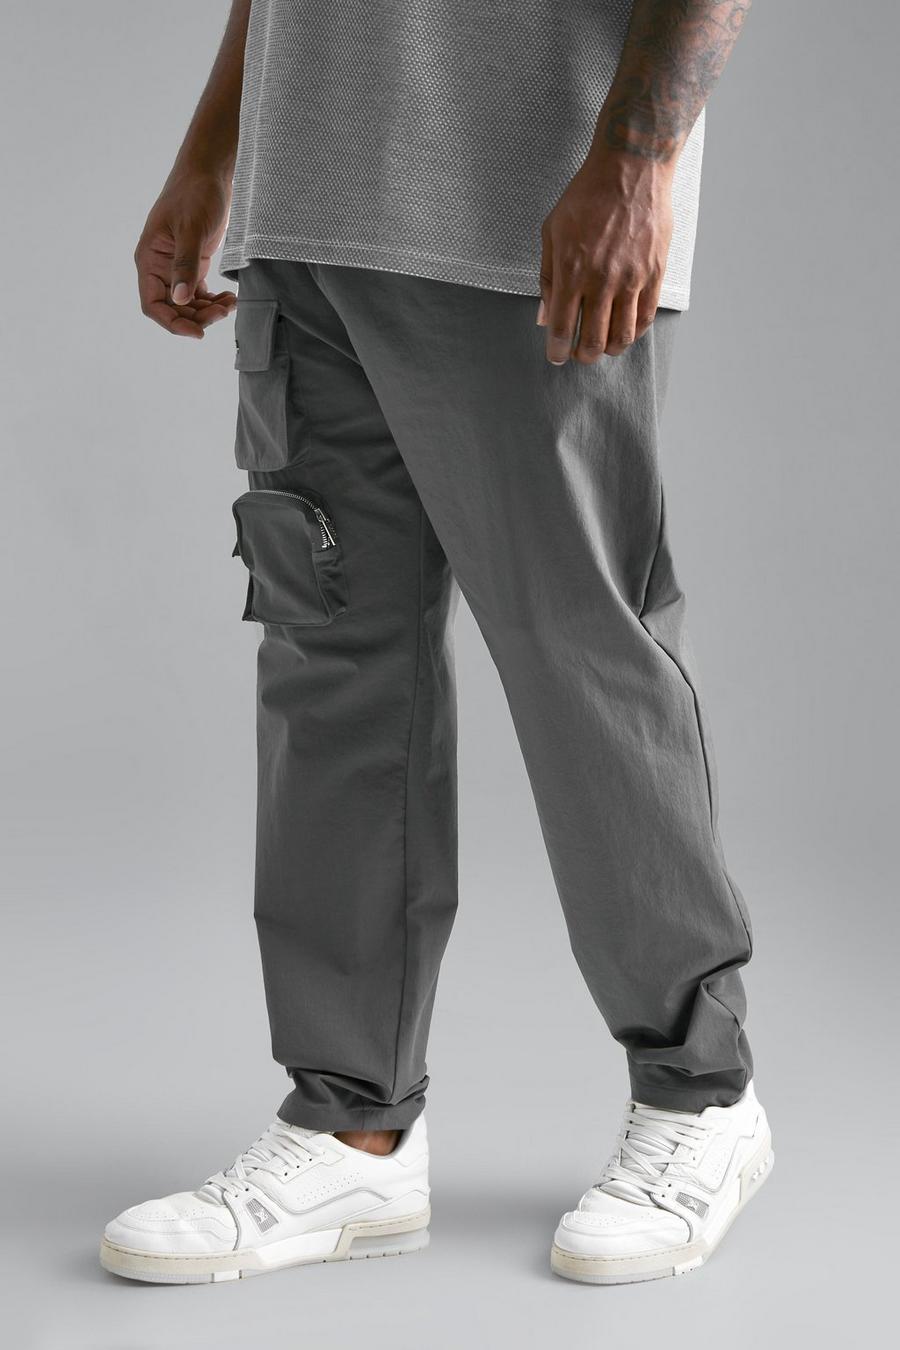 אפור כהה grigio מכנסיים בגזרה צרה עם רוכסן למידות גדולות